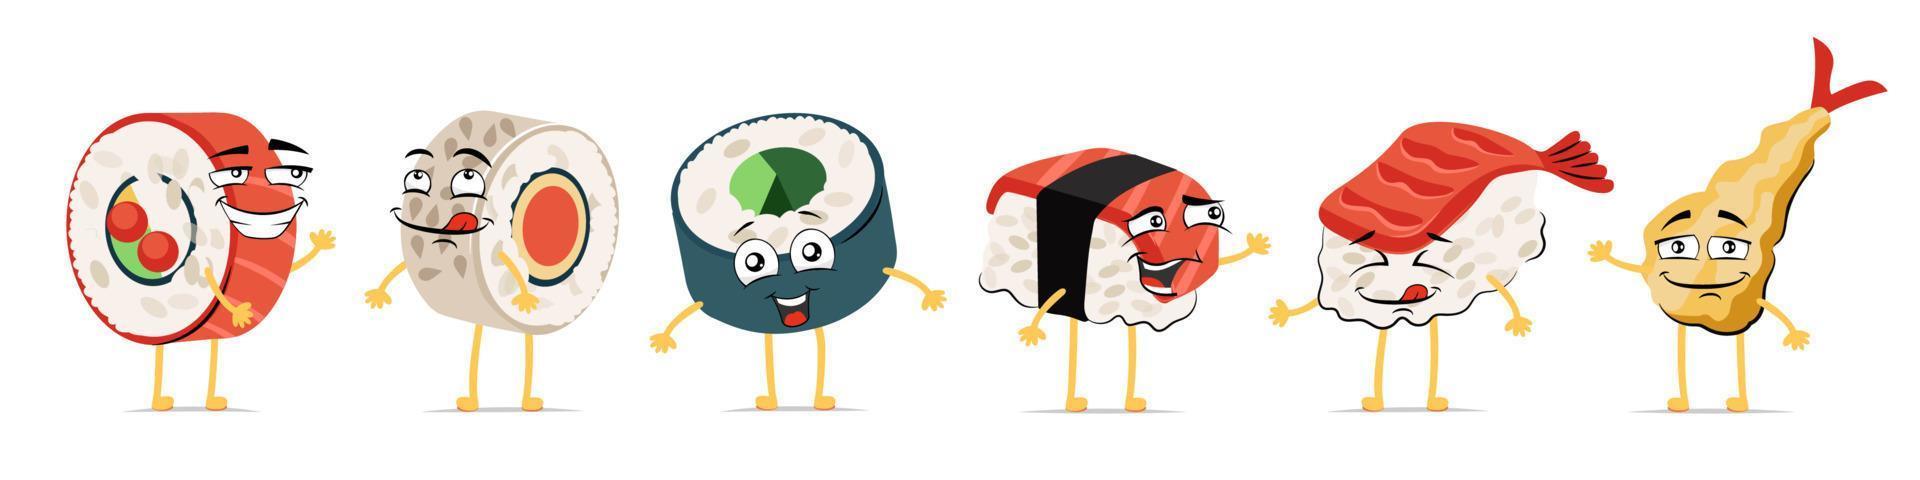 conjunto de caracteres sonrientes de dibujos animados divertidos de comida japonesa. sushi y rollos de cocina japonesa linda colección de mascotas con expresión de cara feliz. tempura alegre de mariscos asiáticos. vector comic emoticonos eps ilustración